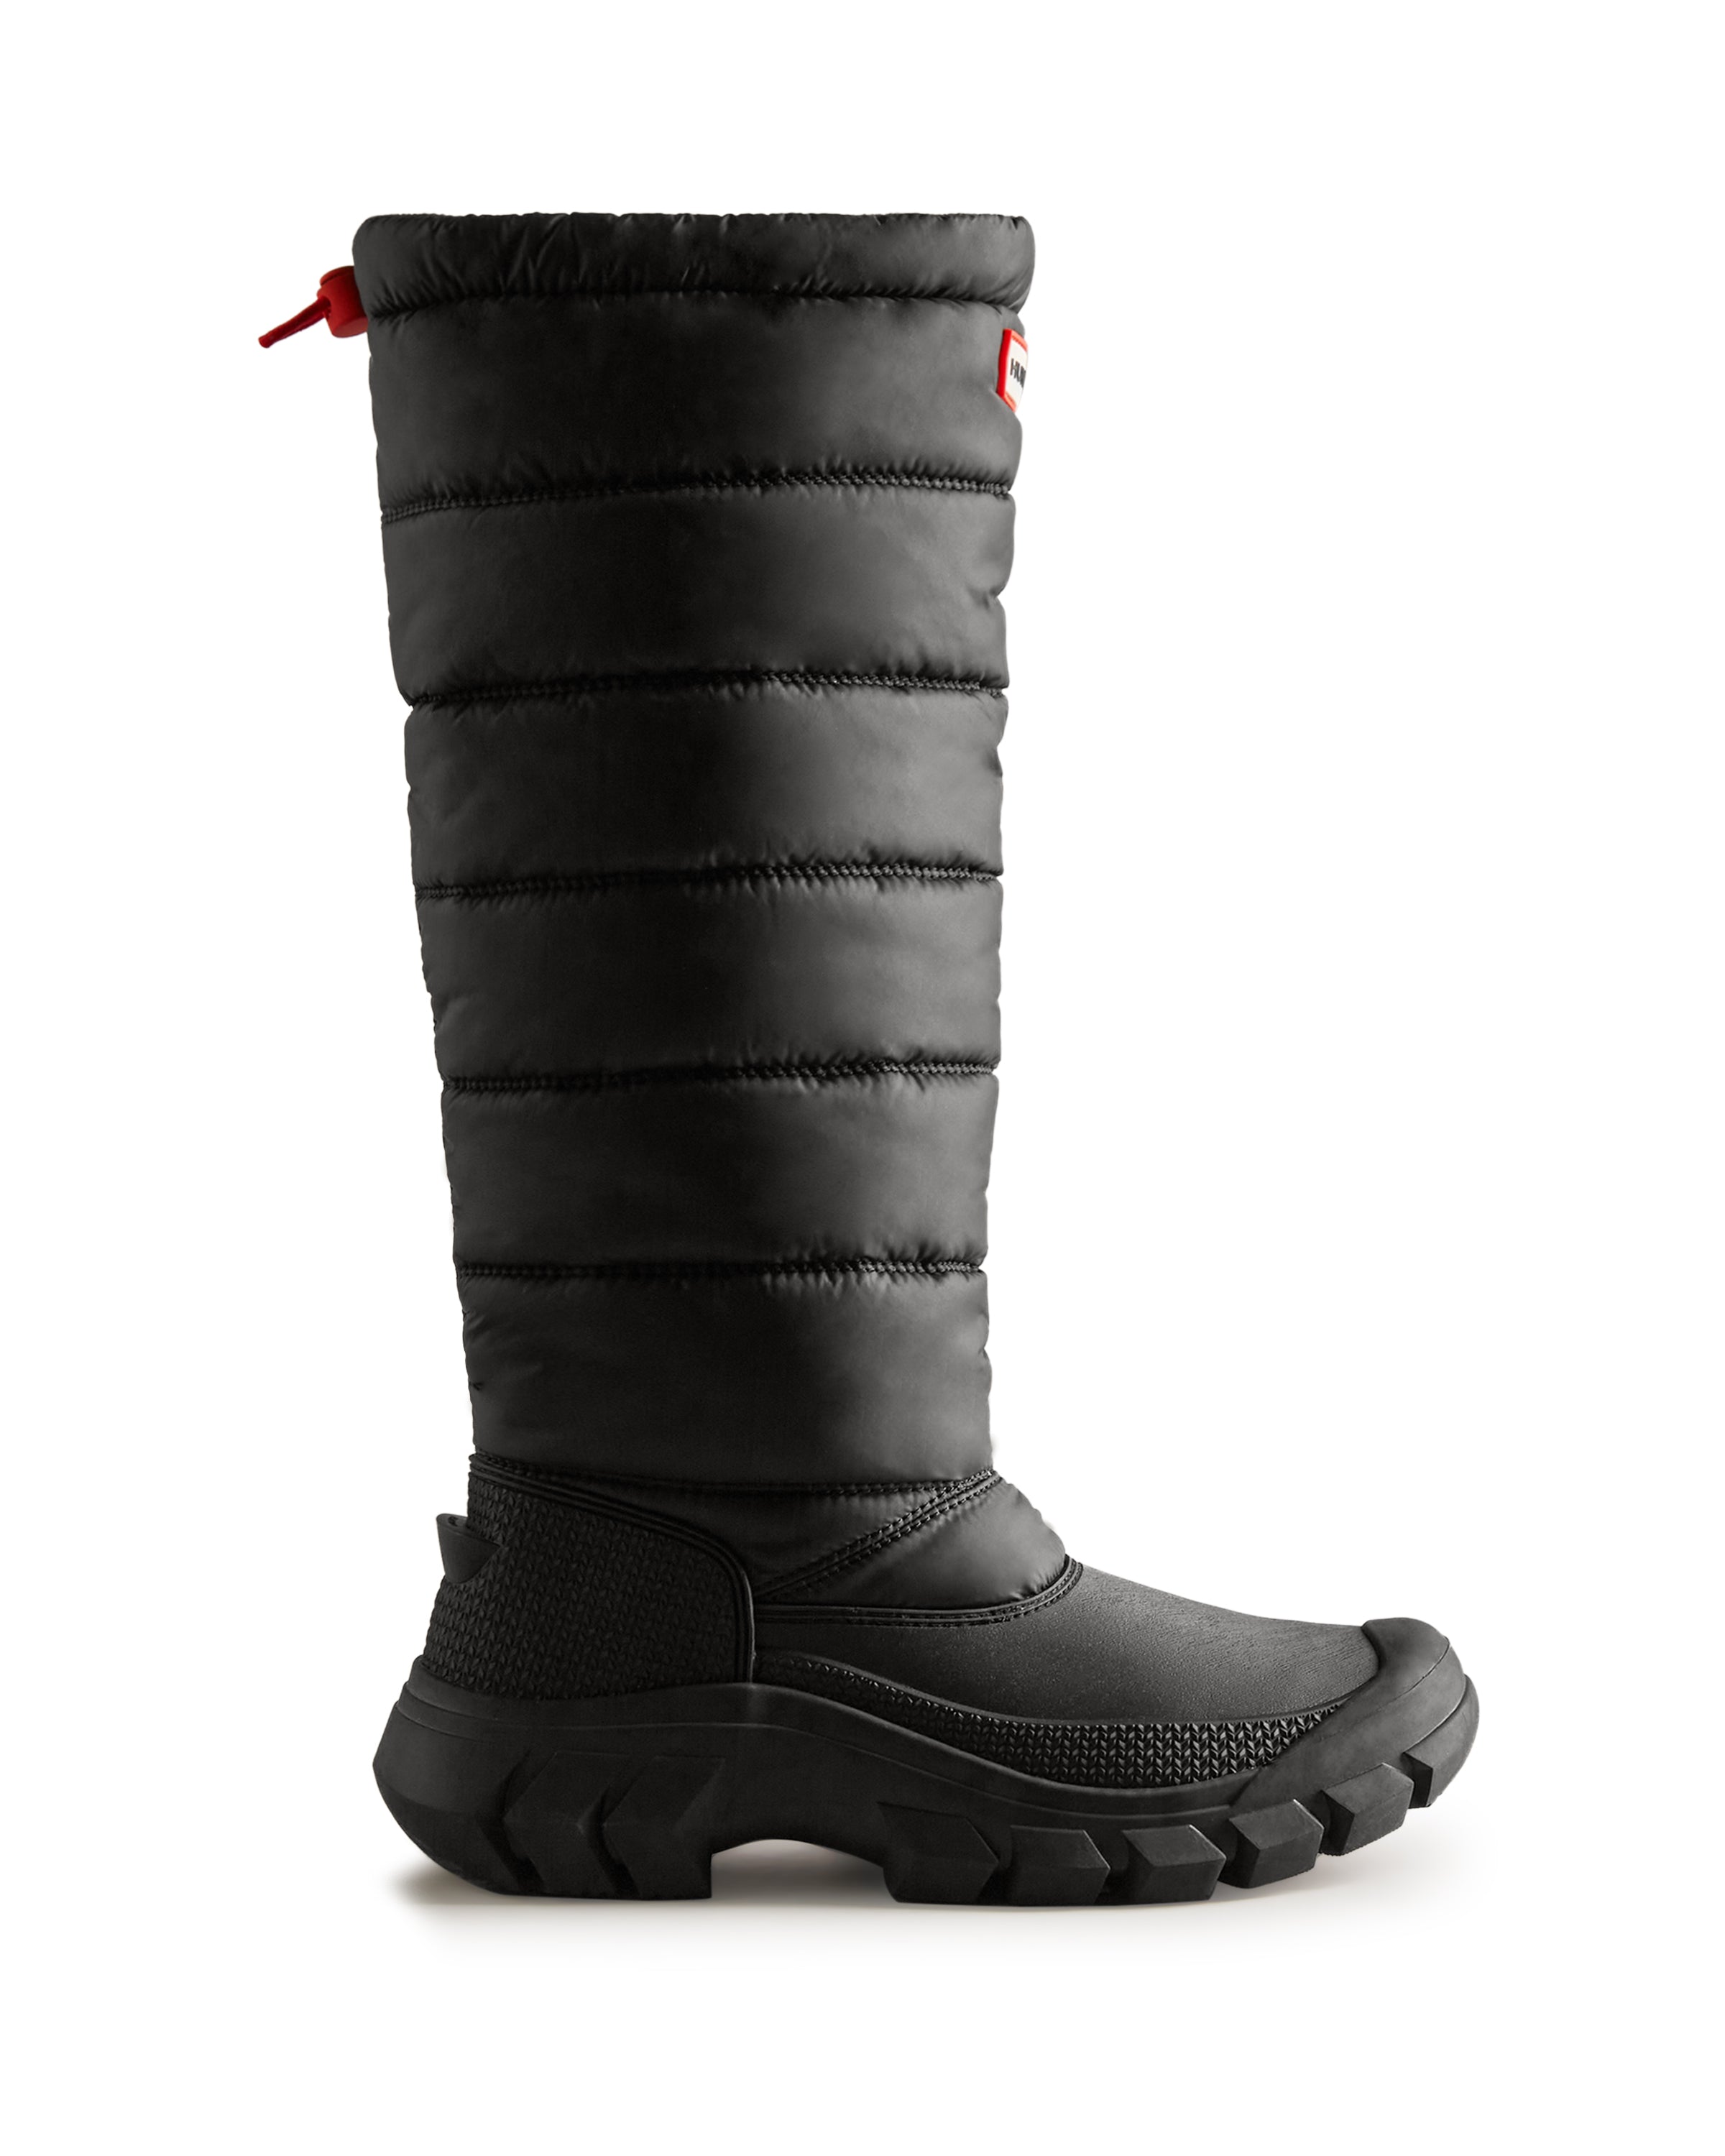 DOLCE & GABBANA ドルチェアンドガッバーナ Quilting Snow Boots キルティング スノーブーツ ブラック333センチヒール